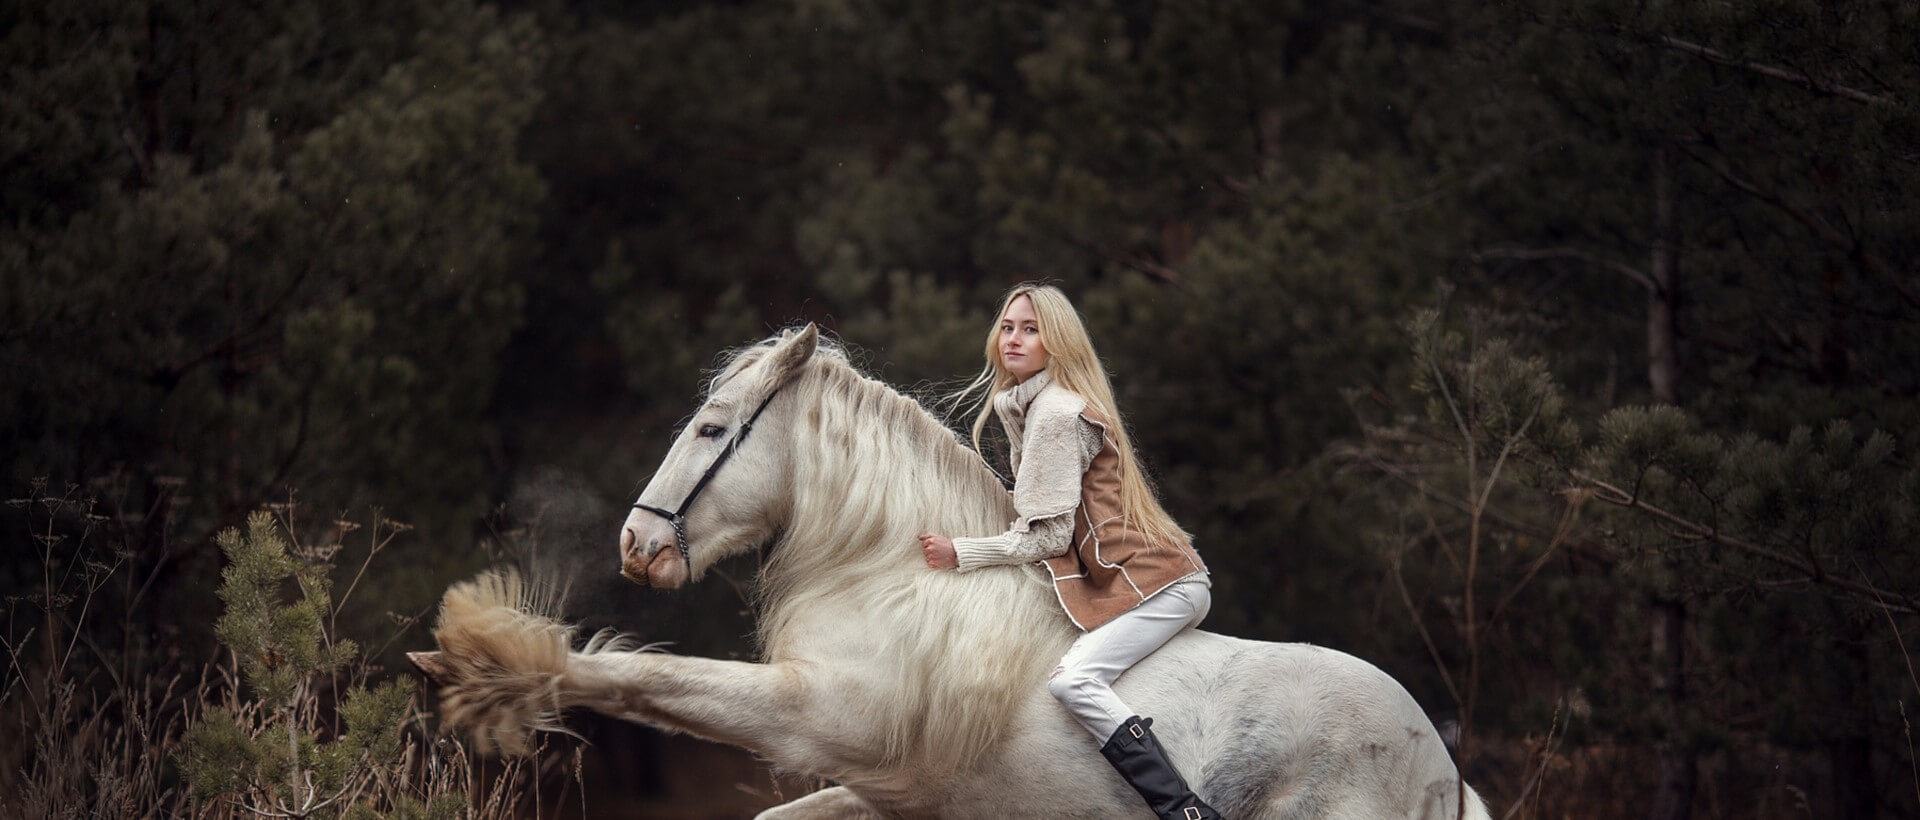 Аренда лошади для фотосессии, Днепр - Фото